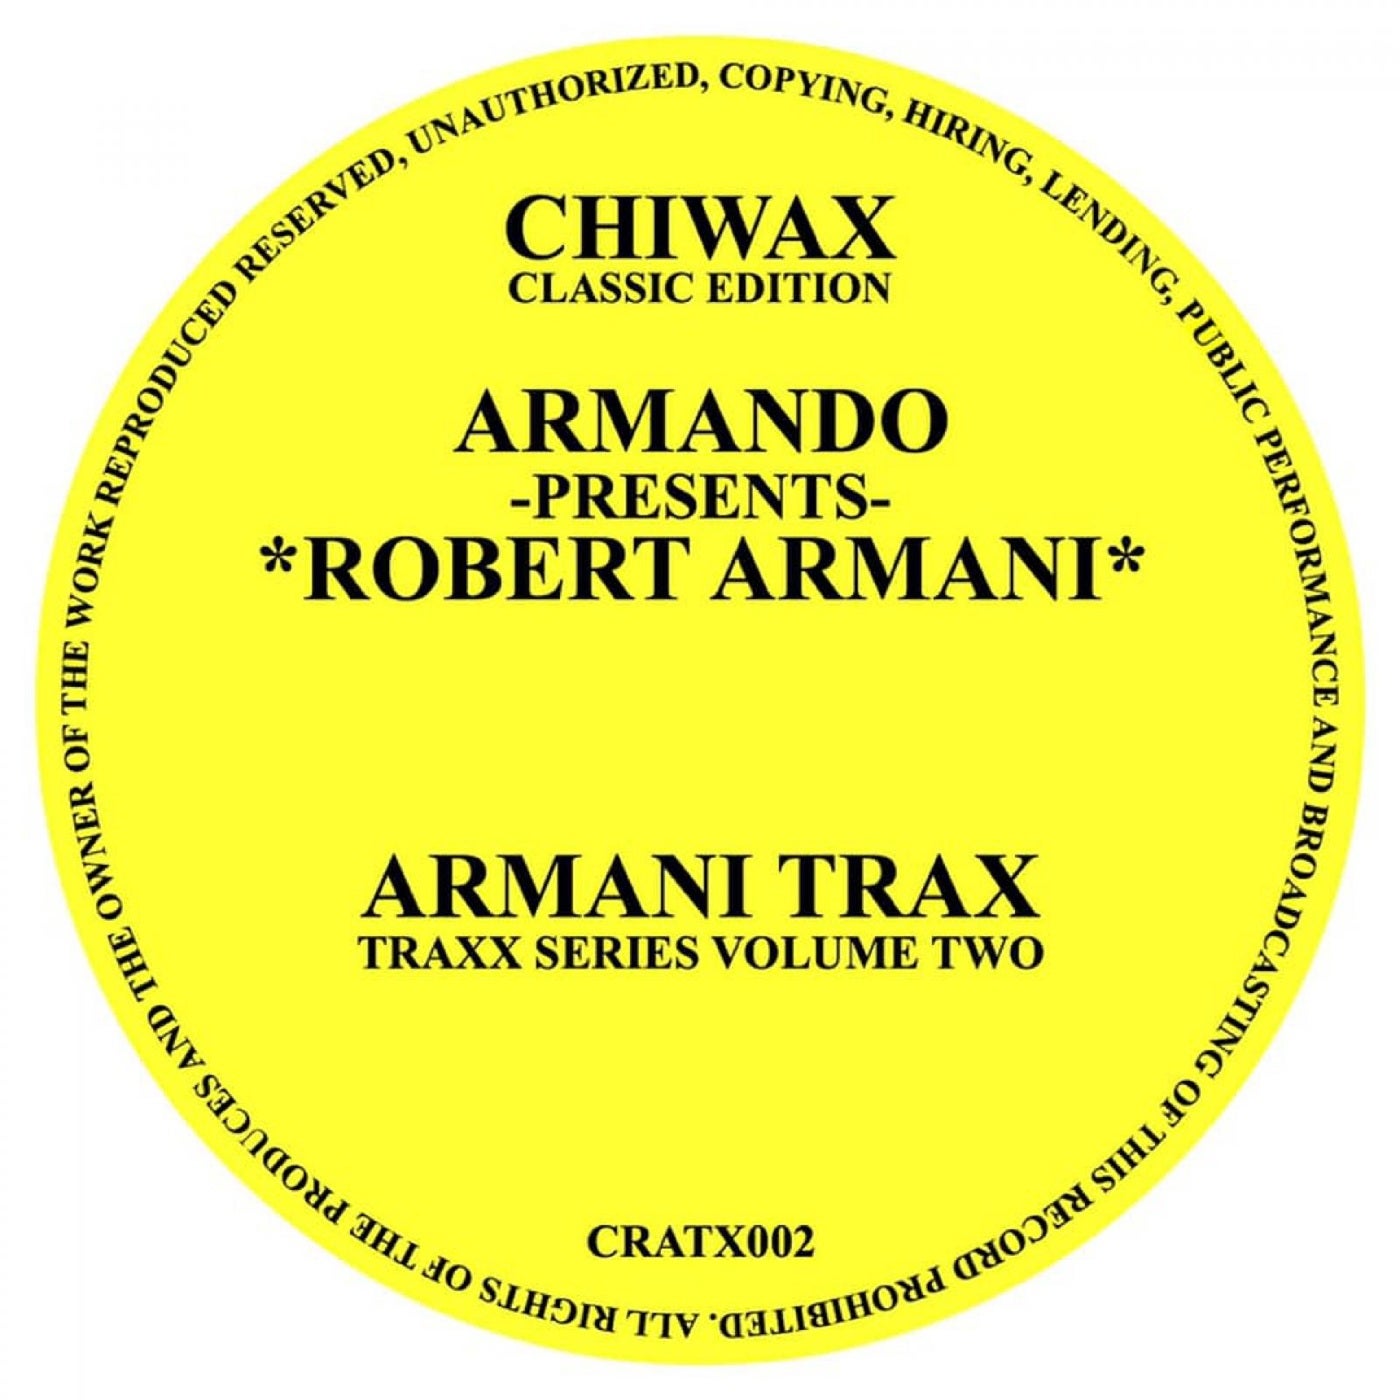 Robert Armani – Armani Trax/Circus Bells (incl. Armando Remixes) [CRATX 002]